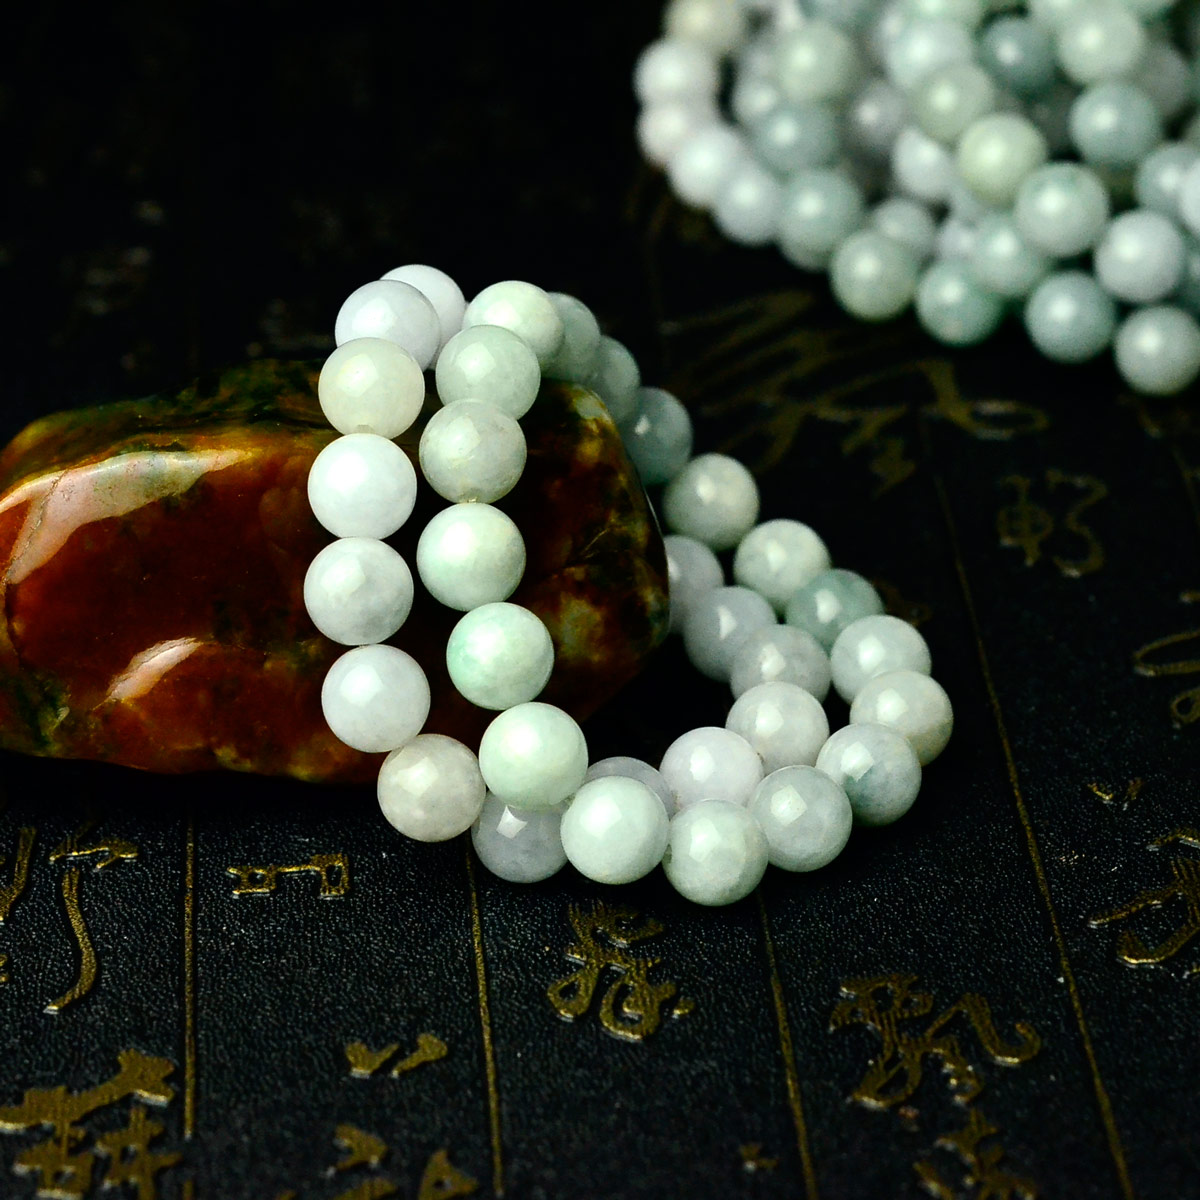 翡翠ブレスレット 淡い翠 10mm珠 18cm - 天然石の卸屋